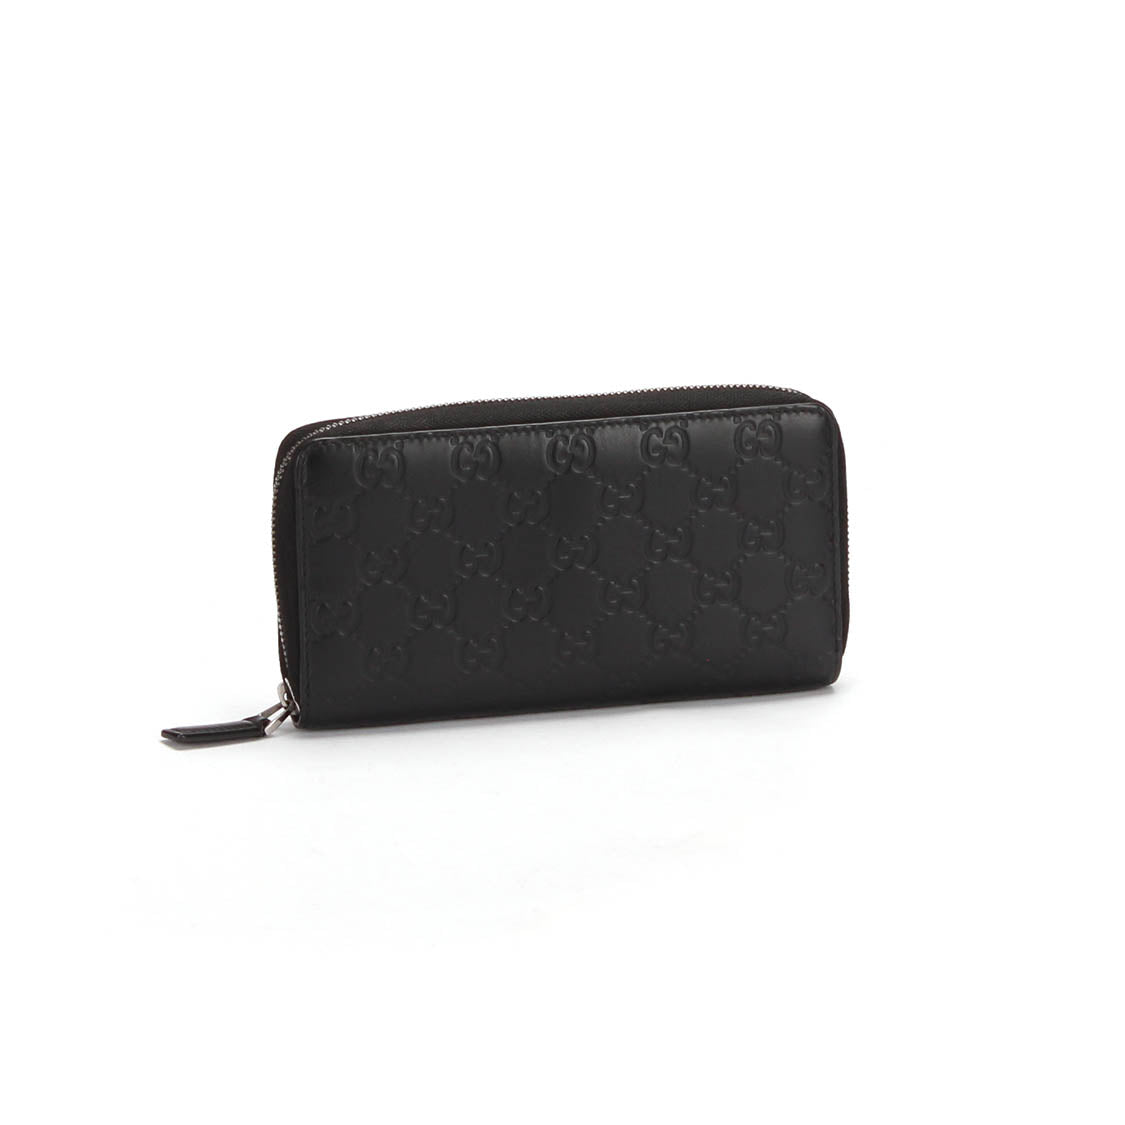 GG Supreme Leather Zip Around Wallet 431194